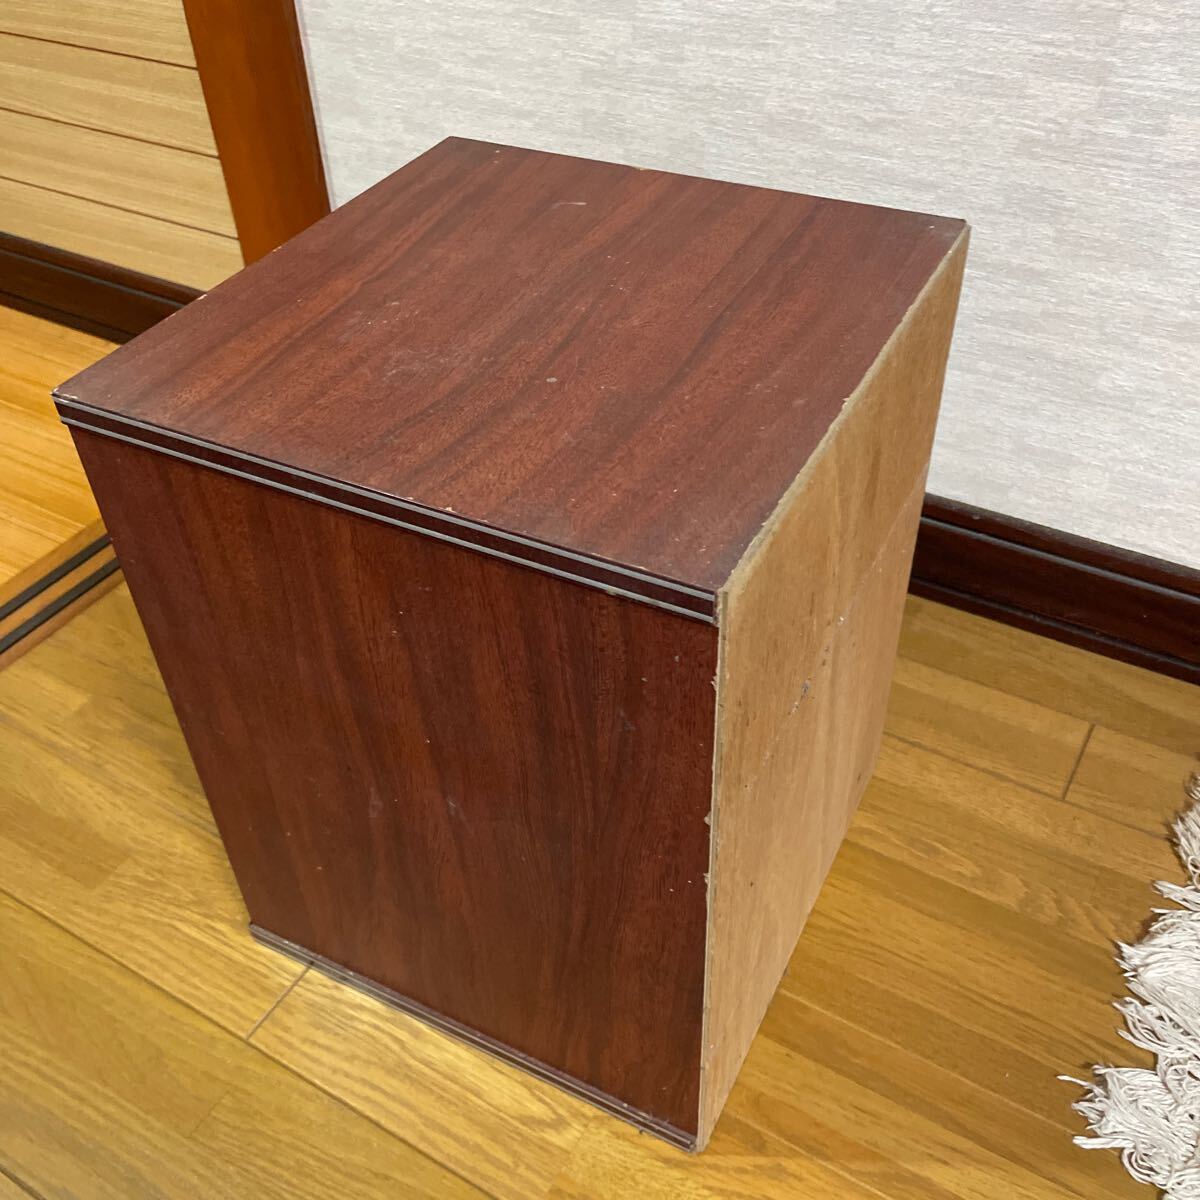  wooden case Mid-century modern 